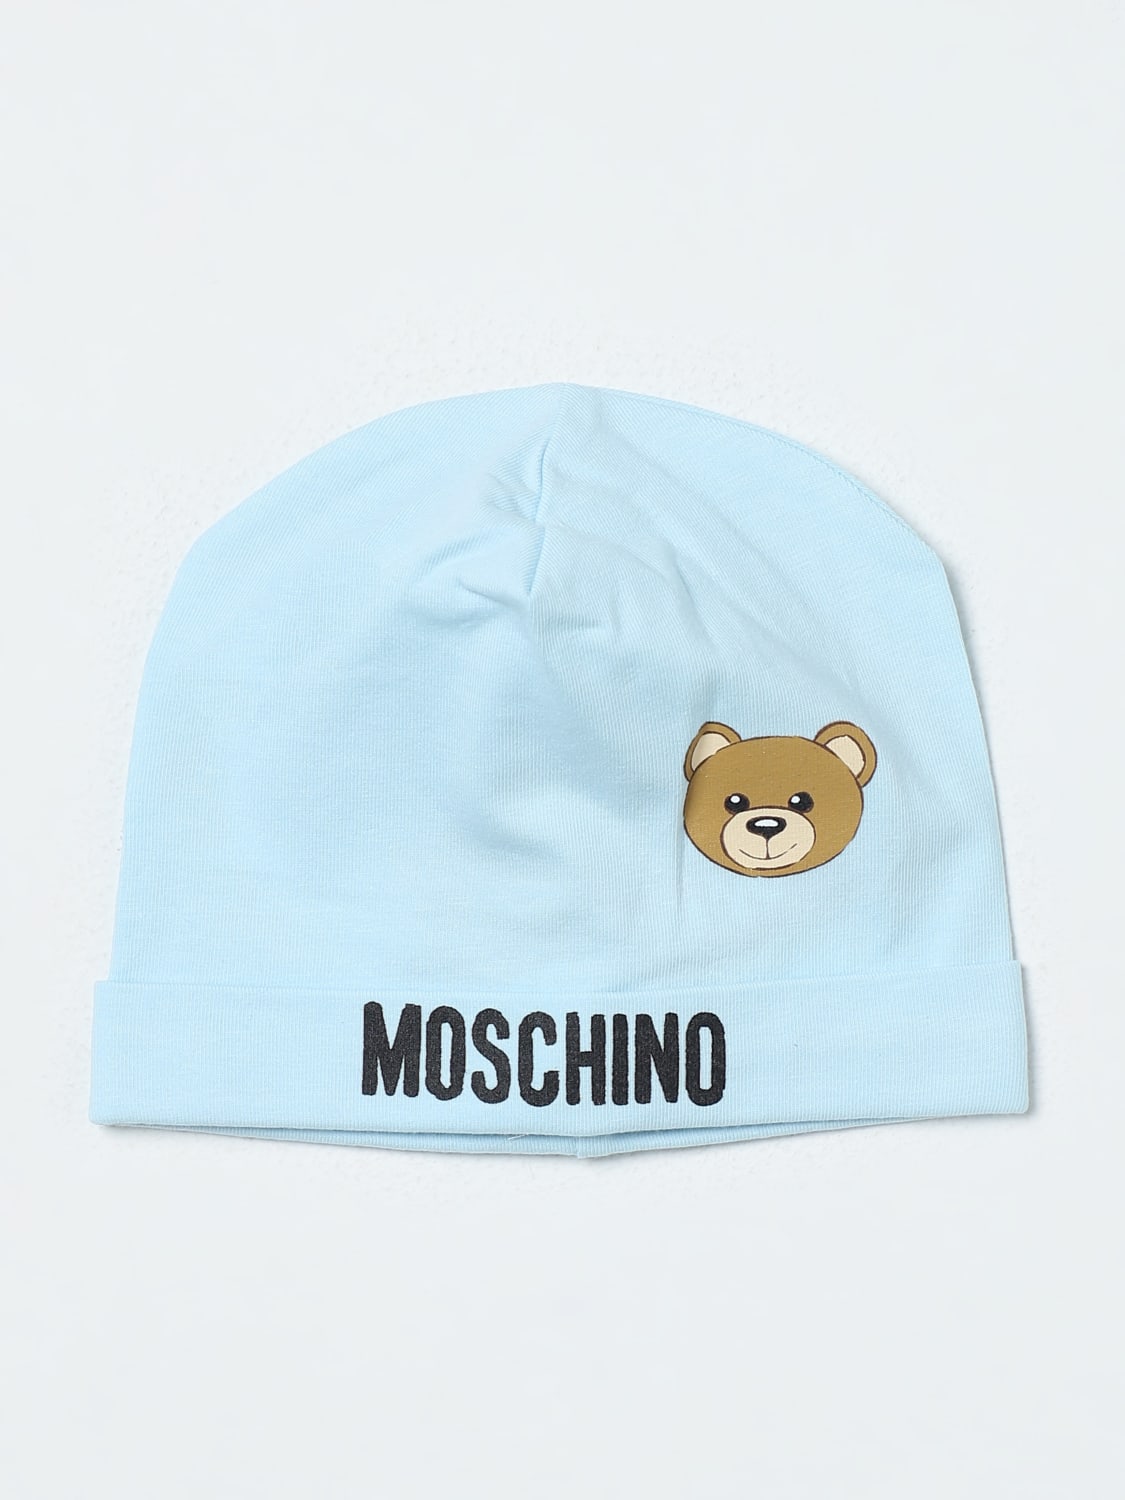 MOSCHINO BABY：帽子儿童- 天蓝色| MOSCHINO BABY 帽子MYX031LBA00